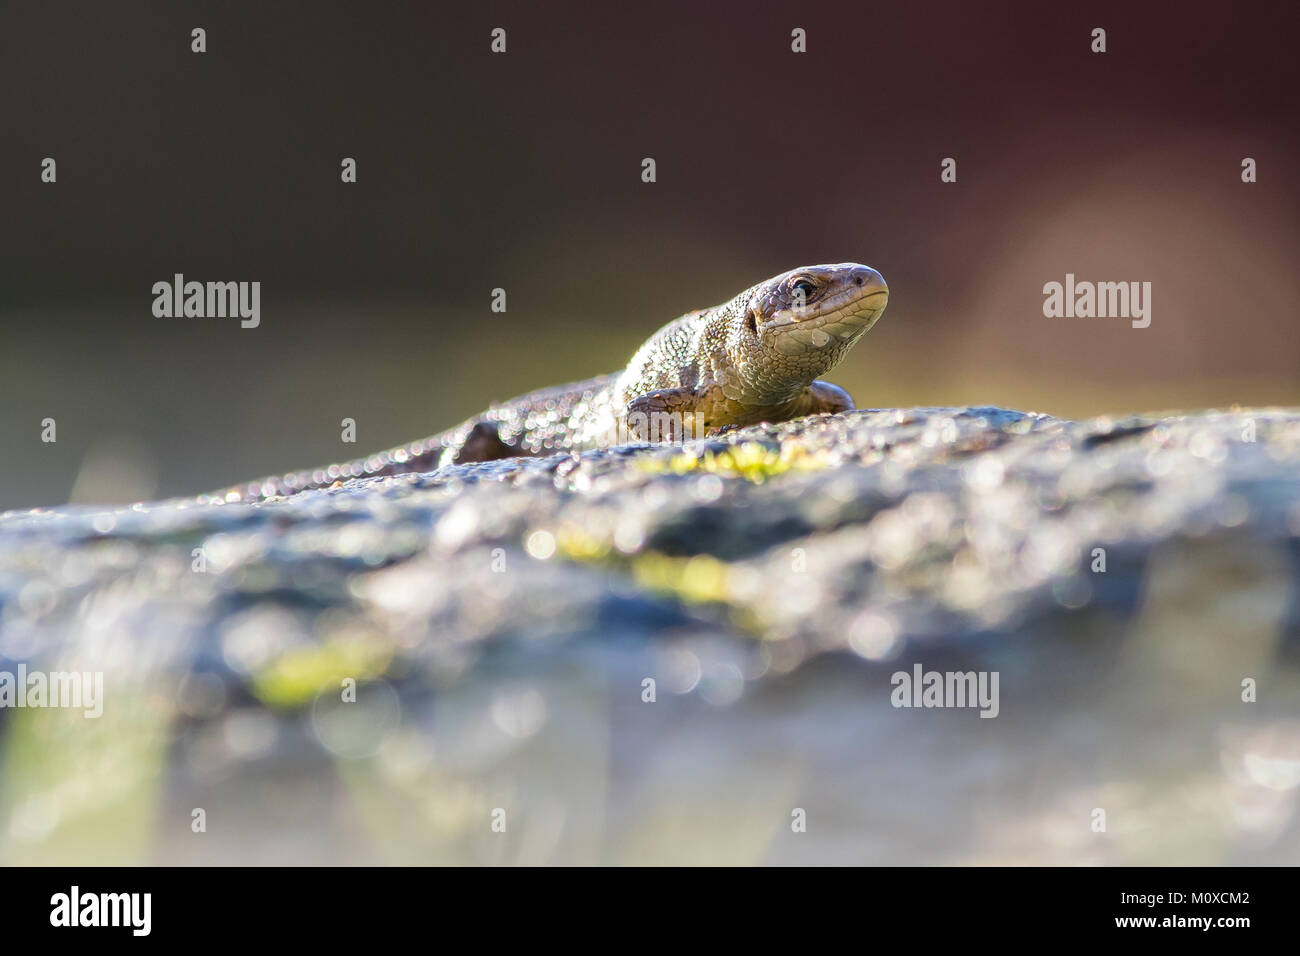 Common Lizard basking in the Sun.   Garden Wildlife in the UK Stock Photo